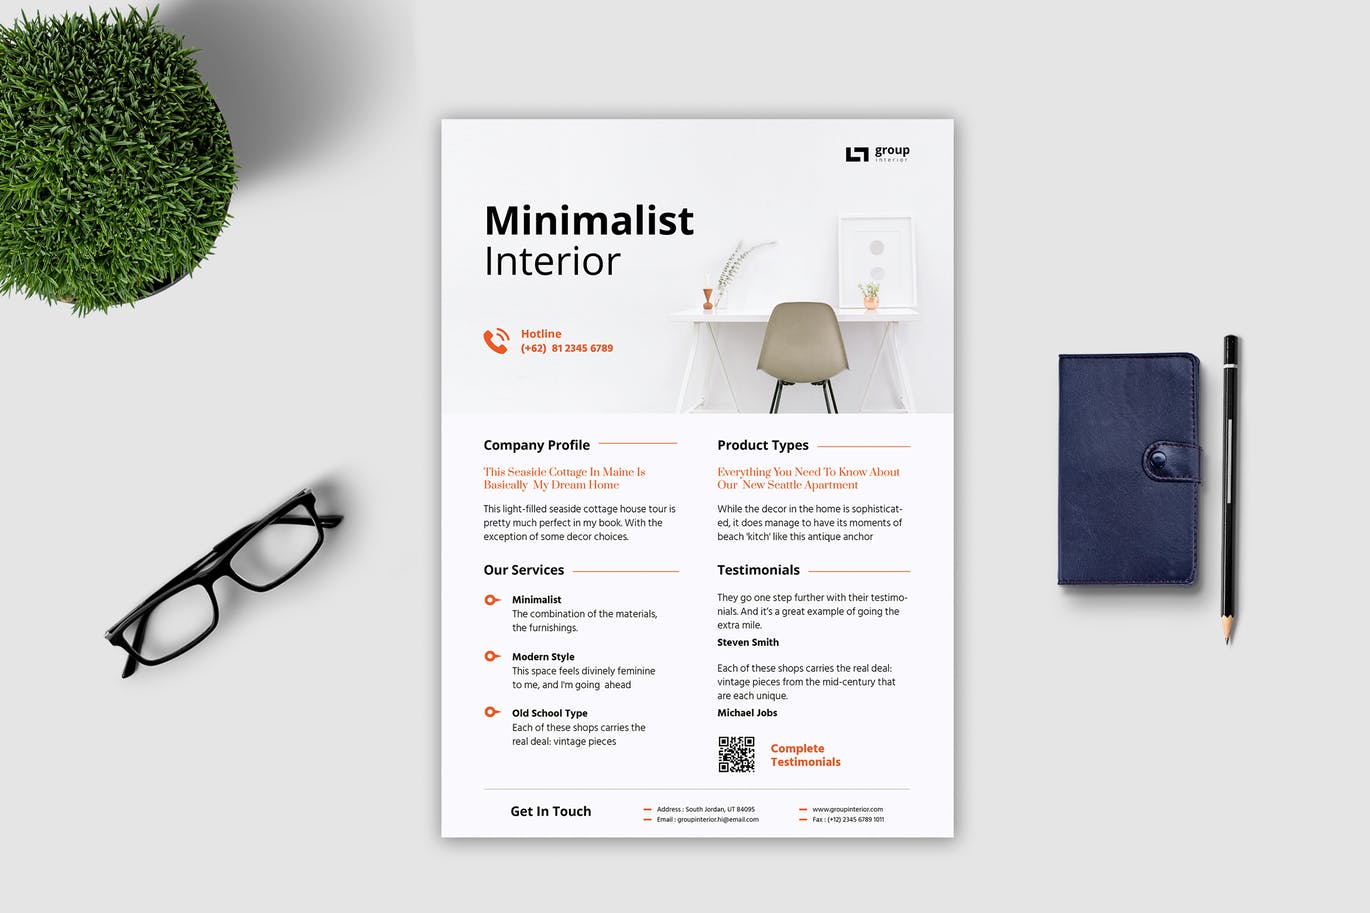 极简主义设计风格室内设计公司传单模板 Minimalist Interior Flyer插图